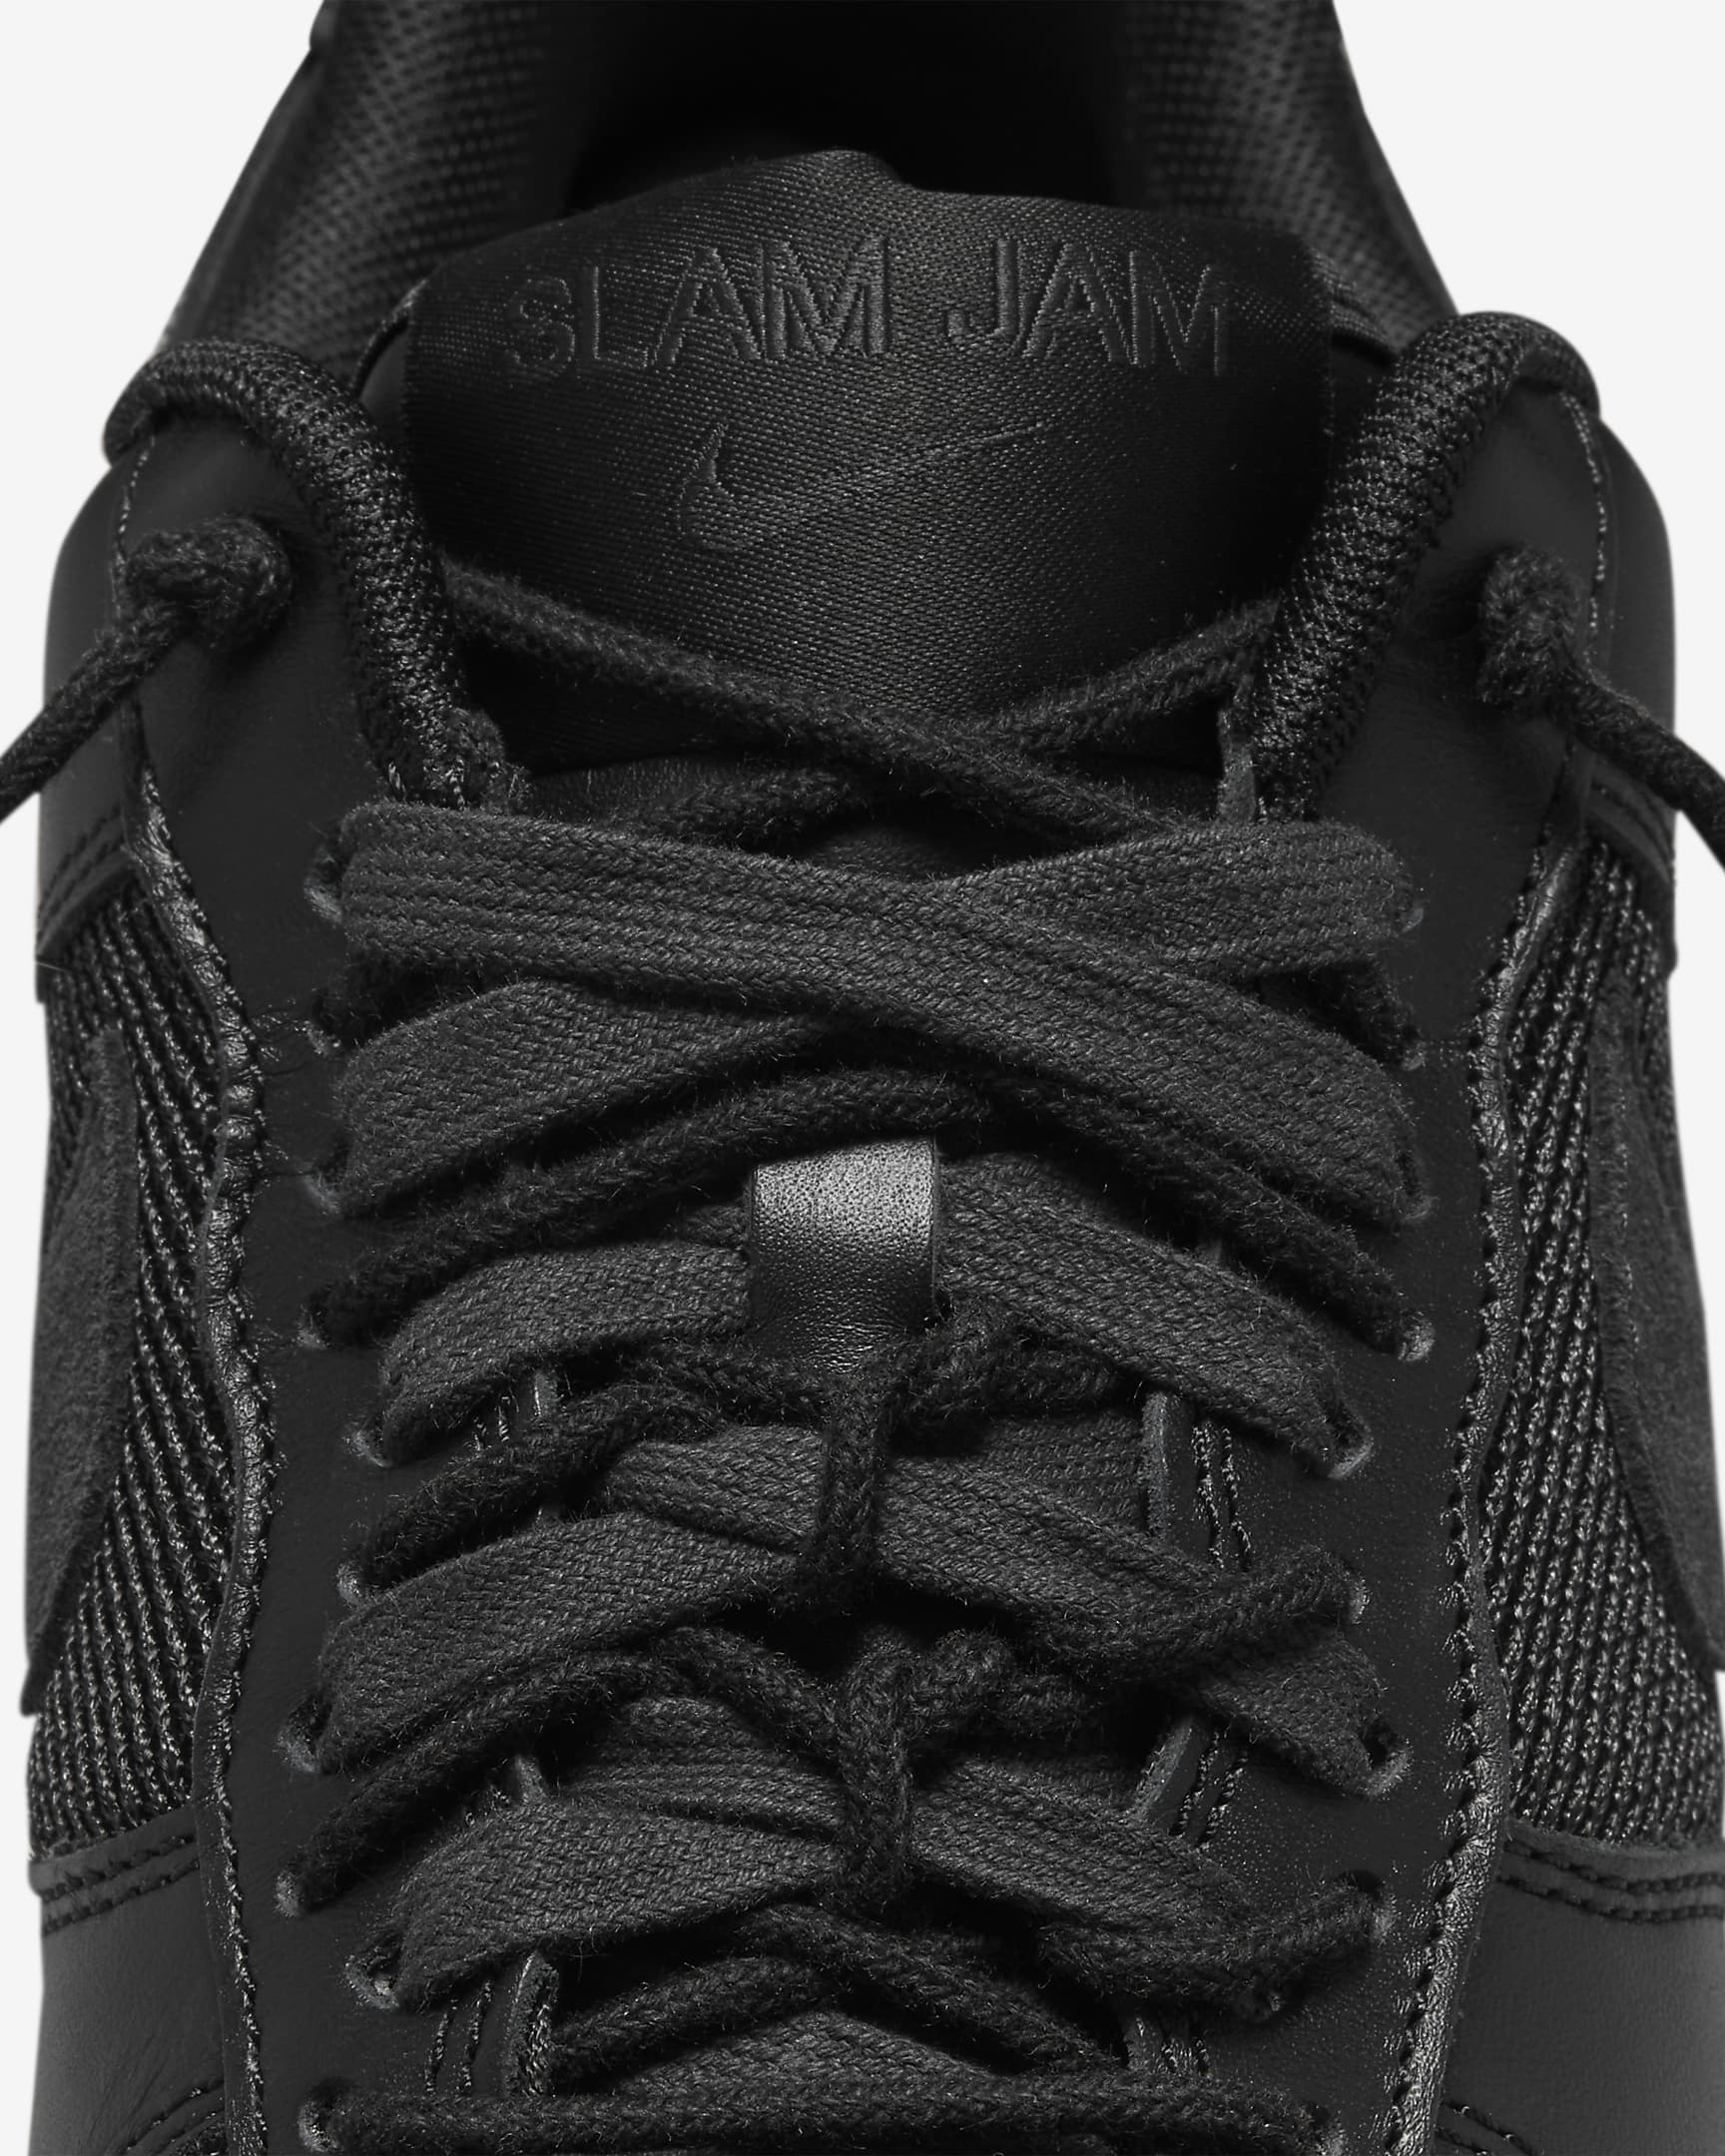 Nike Air Force 1 Low x Slam Jam